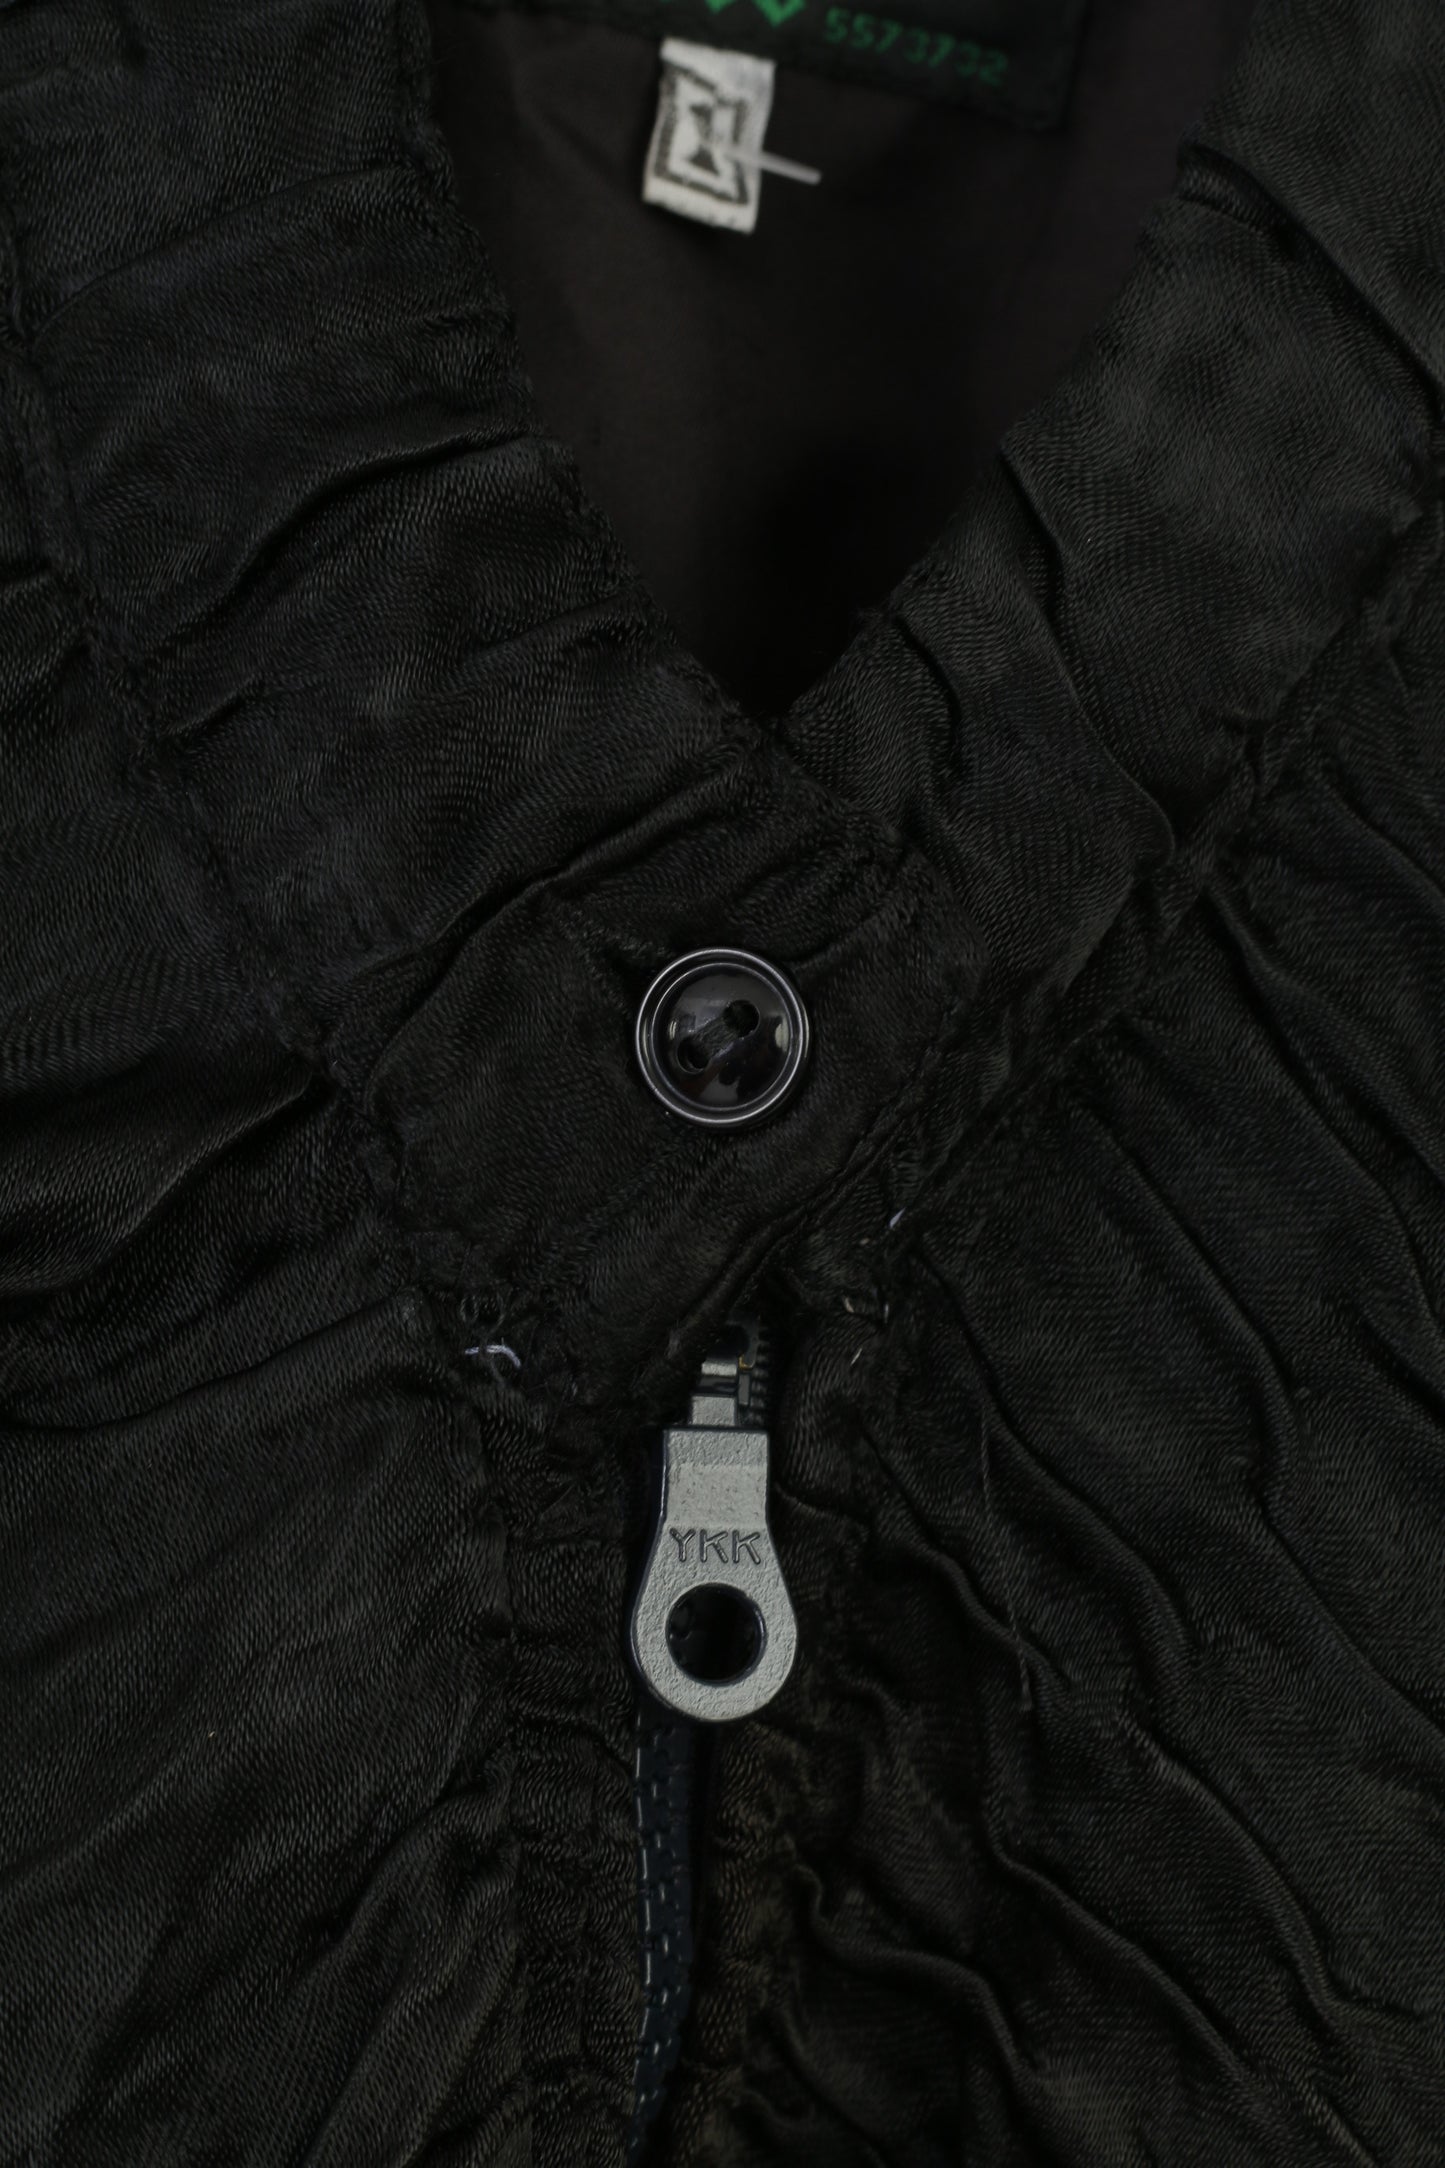 Evateks femmes 1 L veste boléro noir pleine fermeture éclair manches bouffantes Vintage rétro recadrée plis haut 